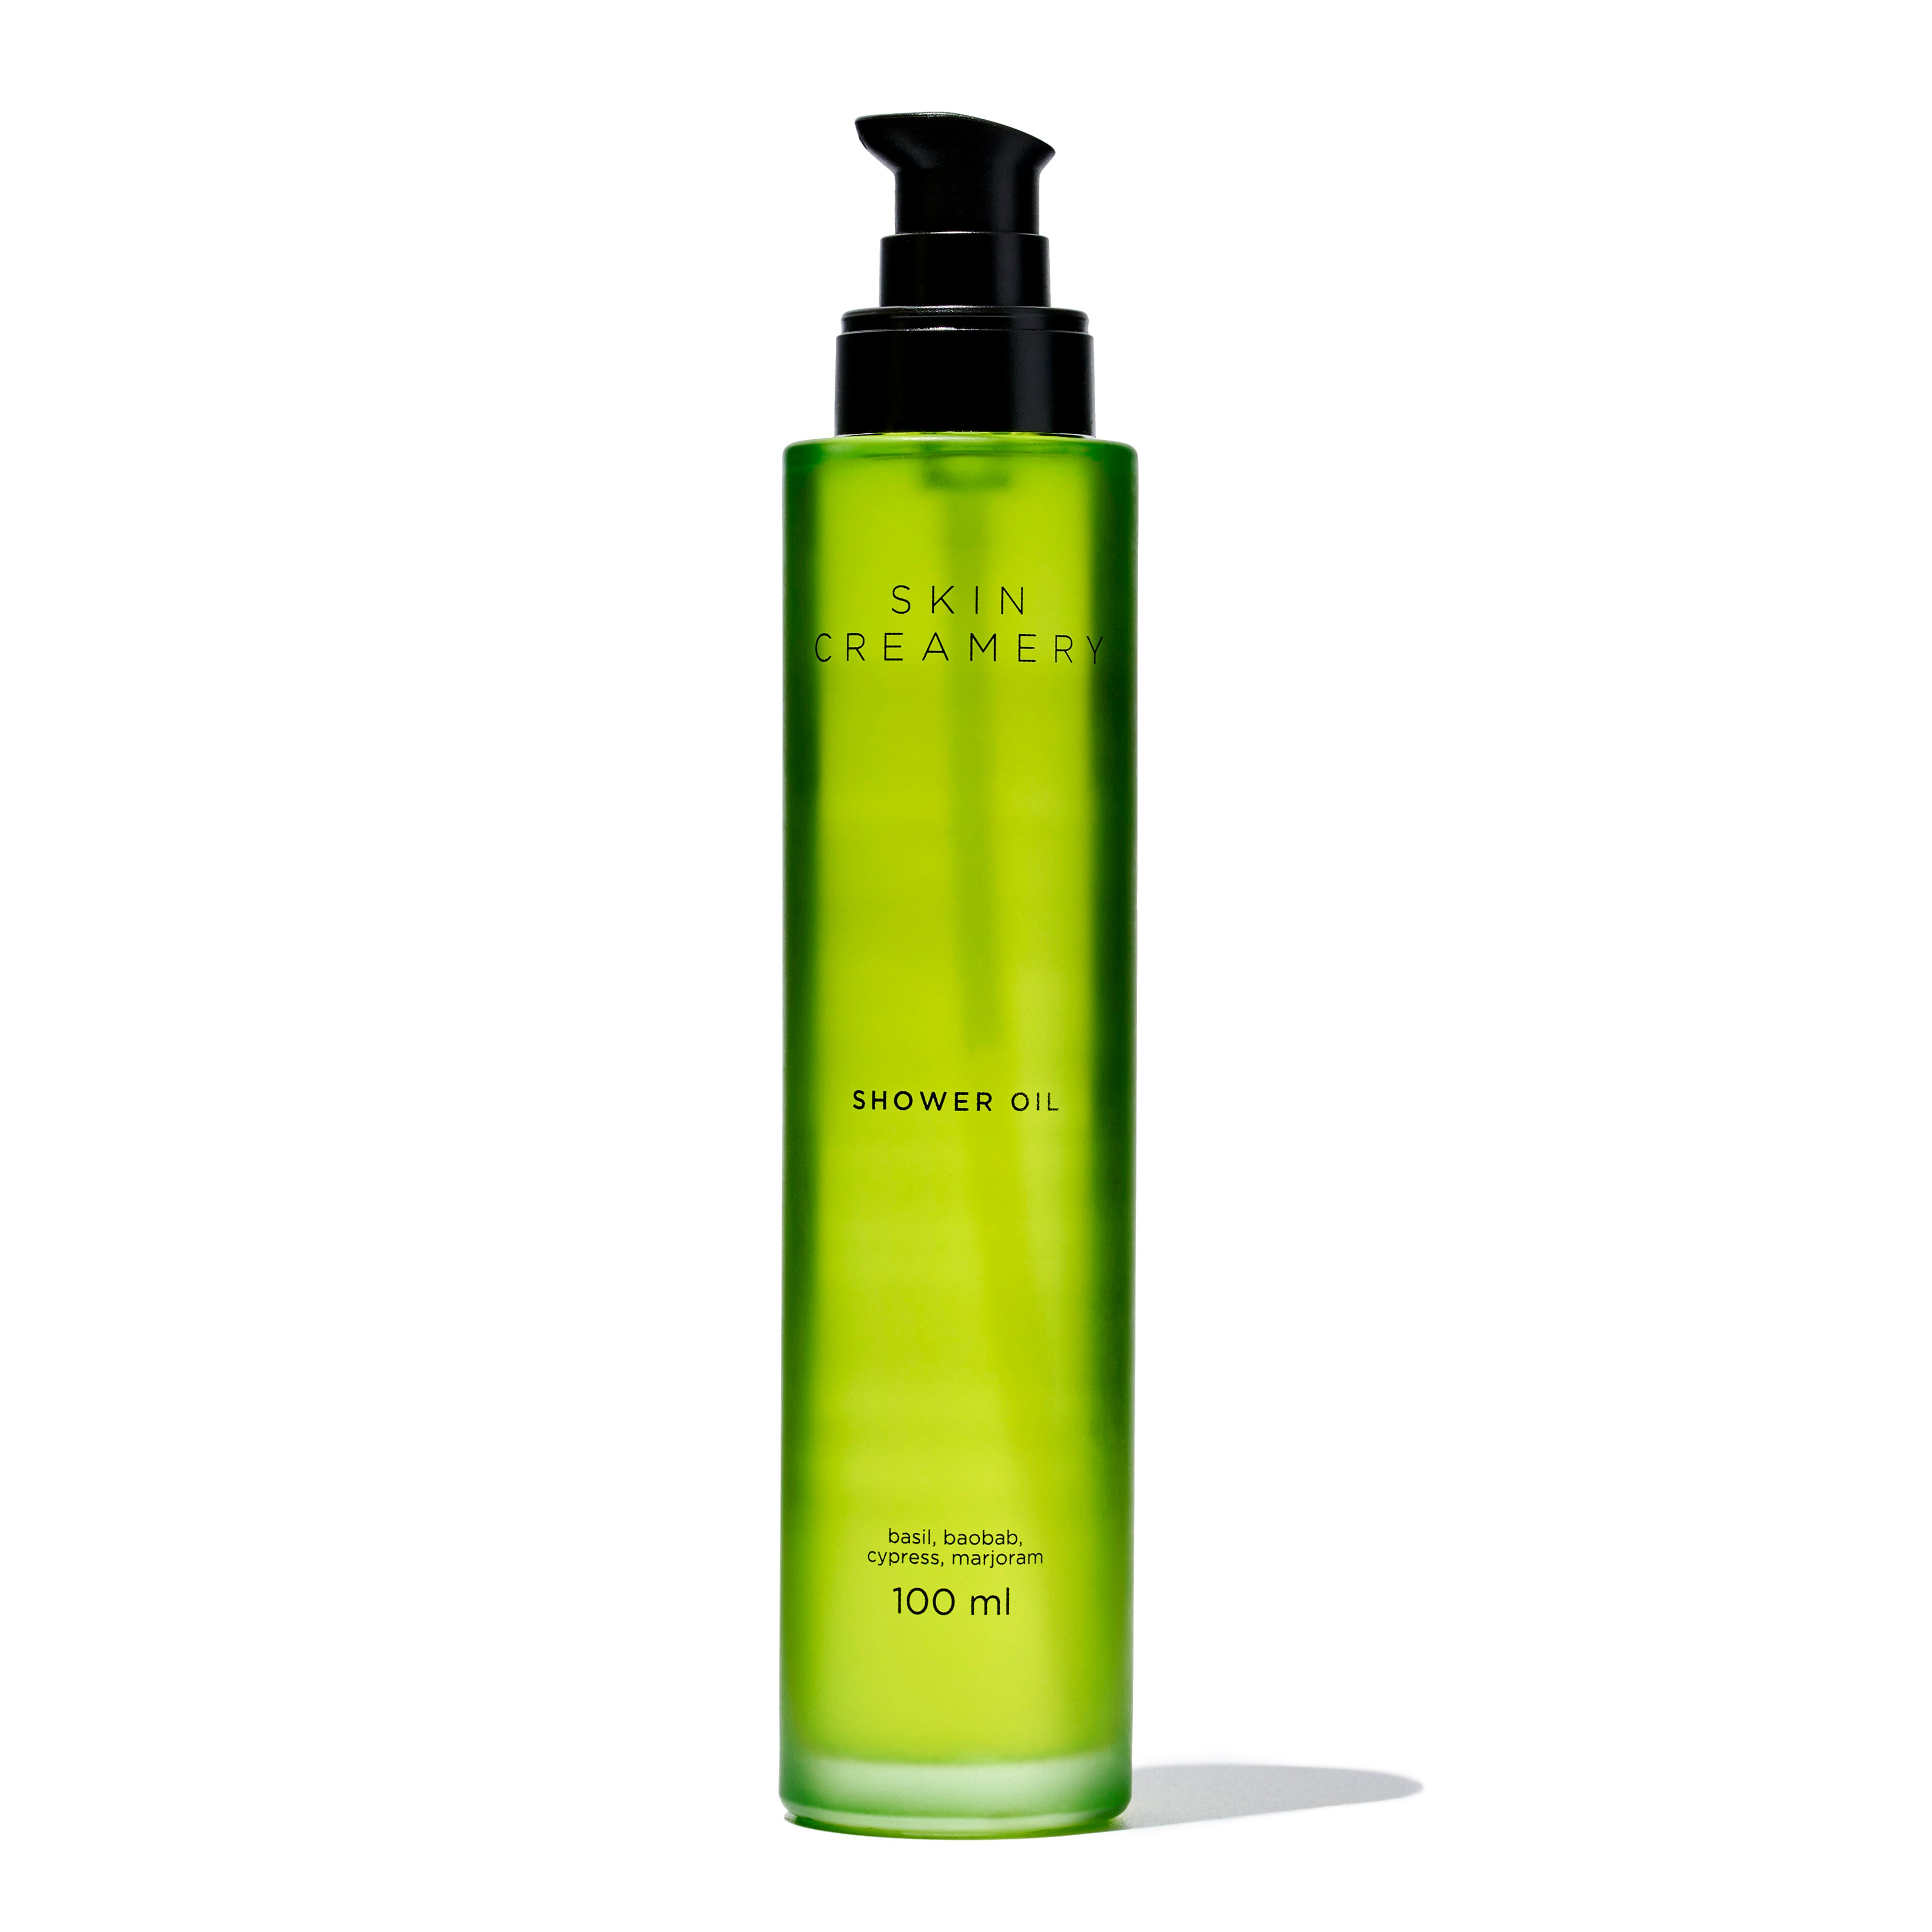 Skin Creamery - Shower Oil | 30ML